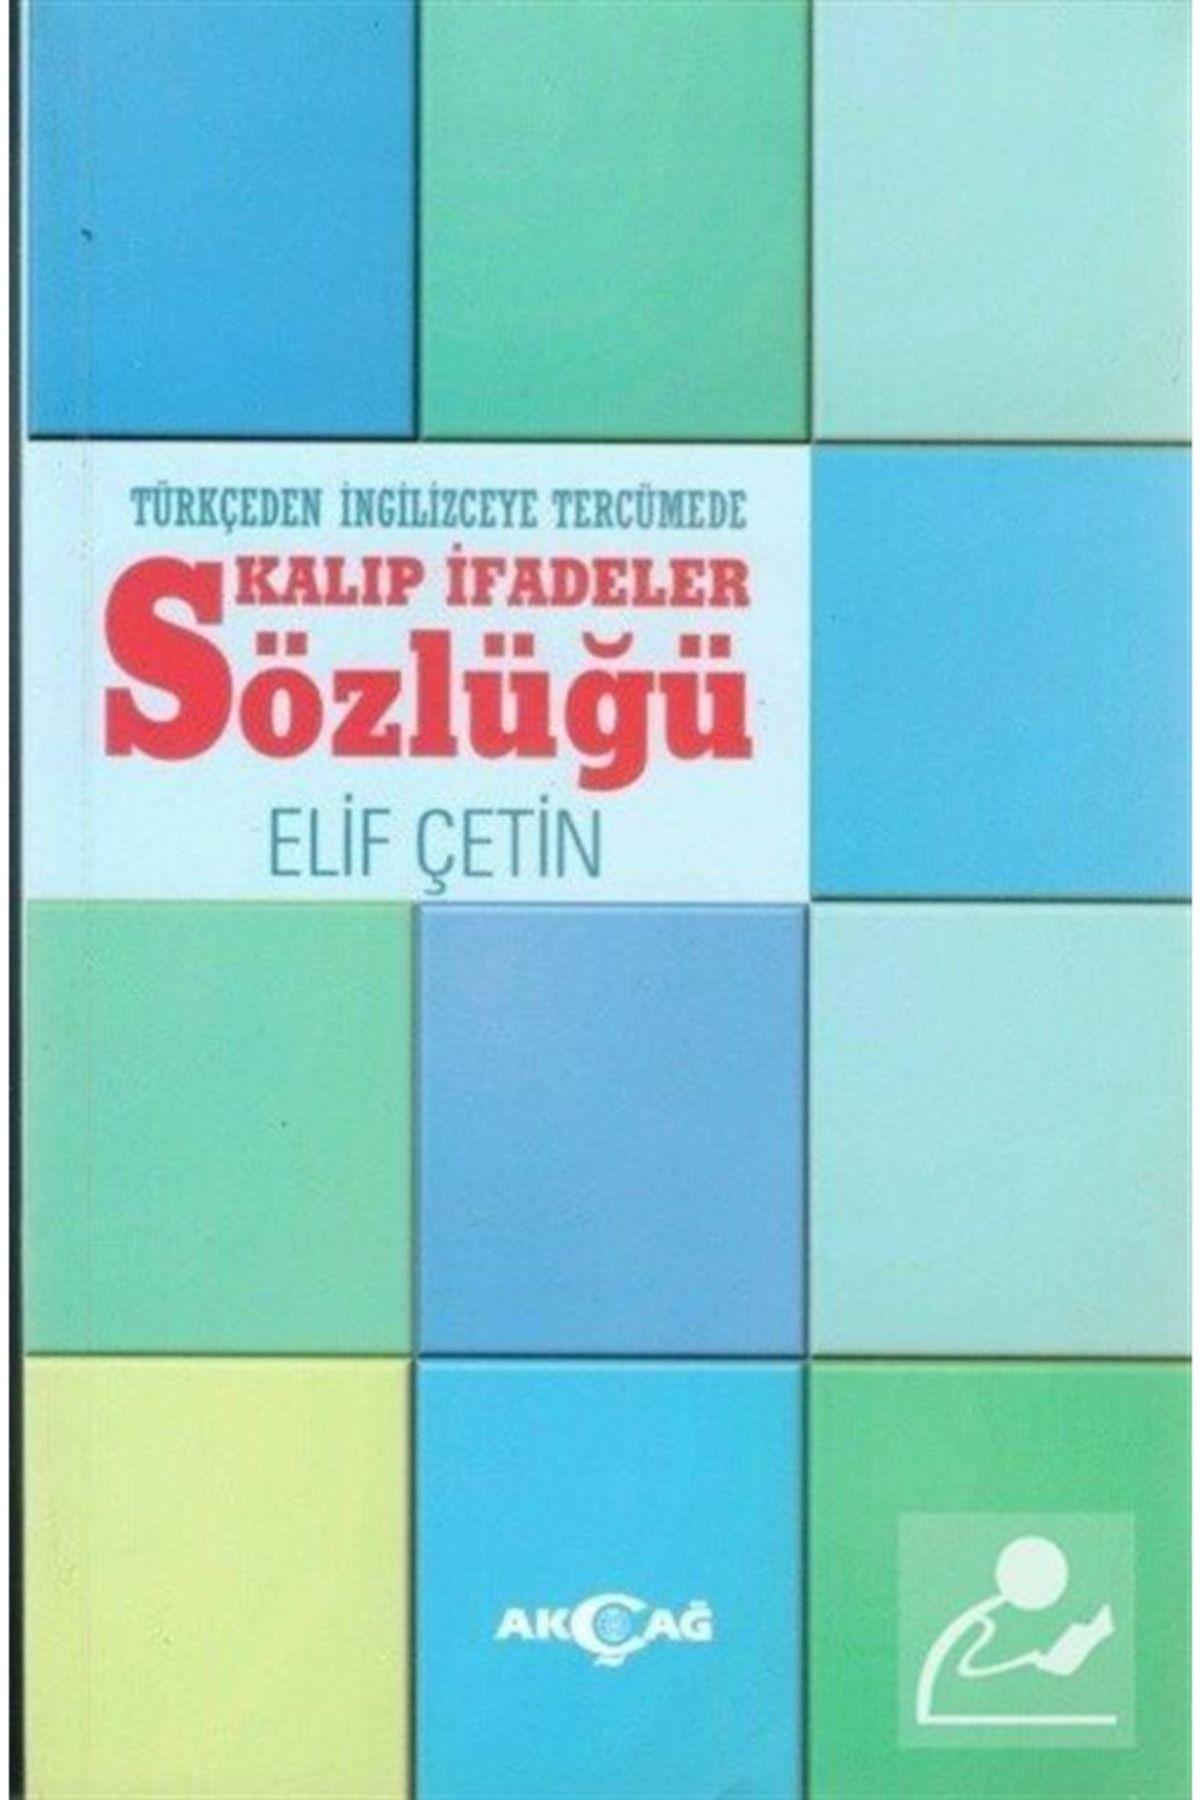 Akçağ Yayınları Türkçeden Ingilizceye Tercümede Kalıp Ifadeler Sözlüğü